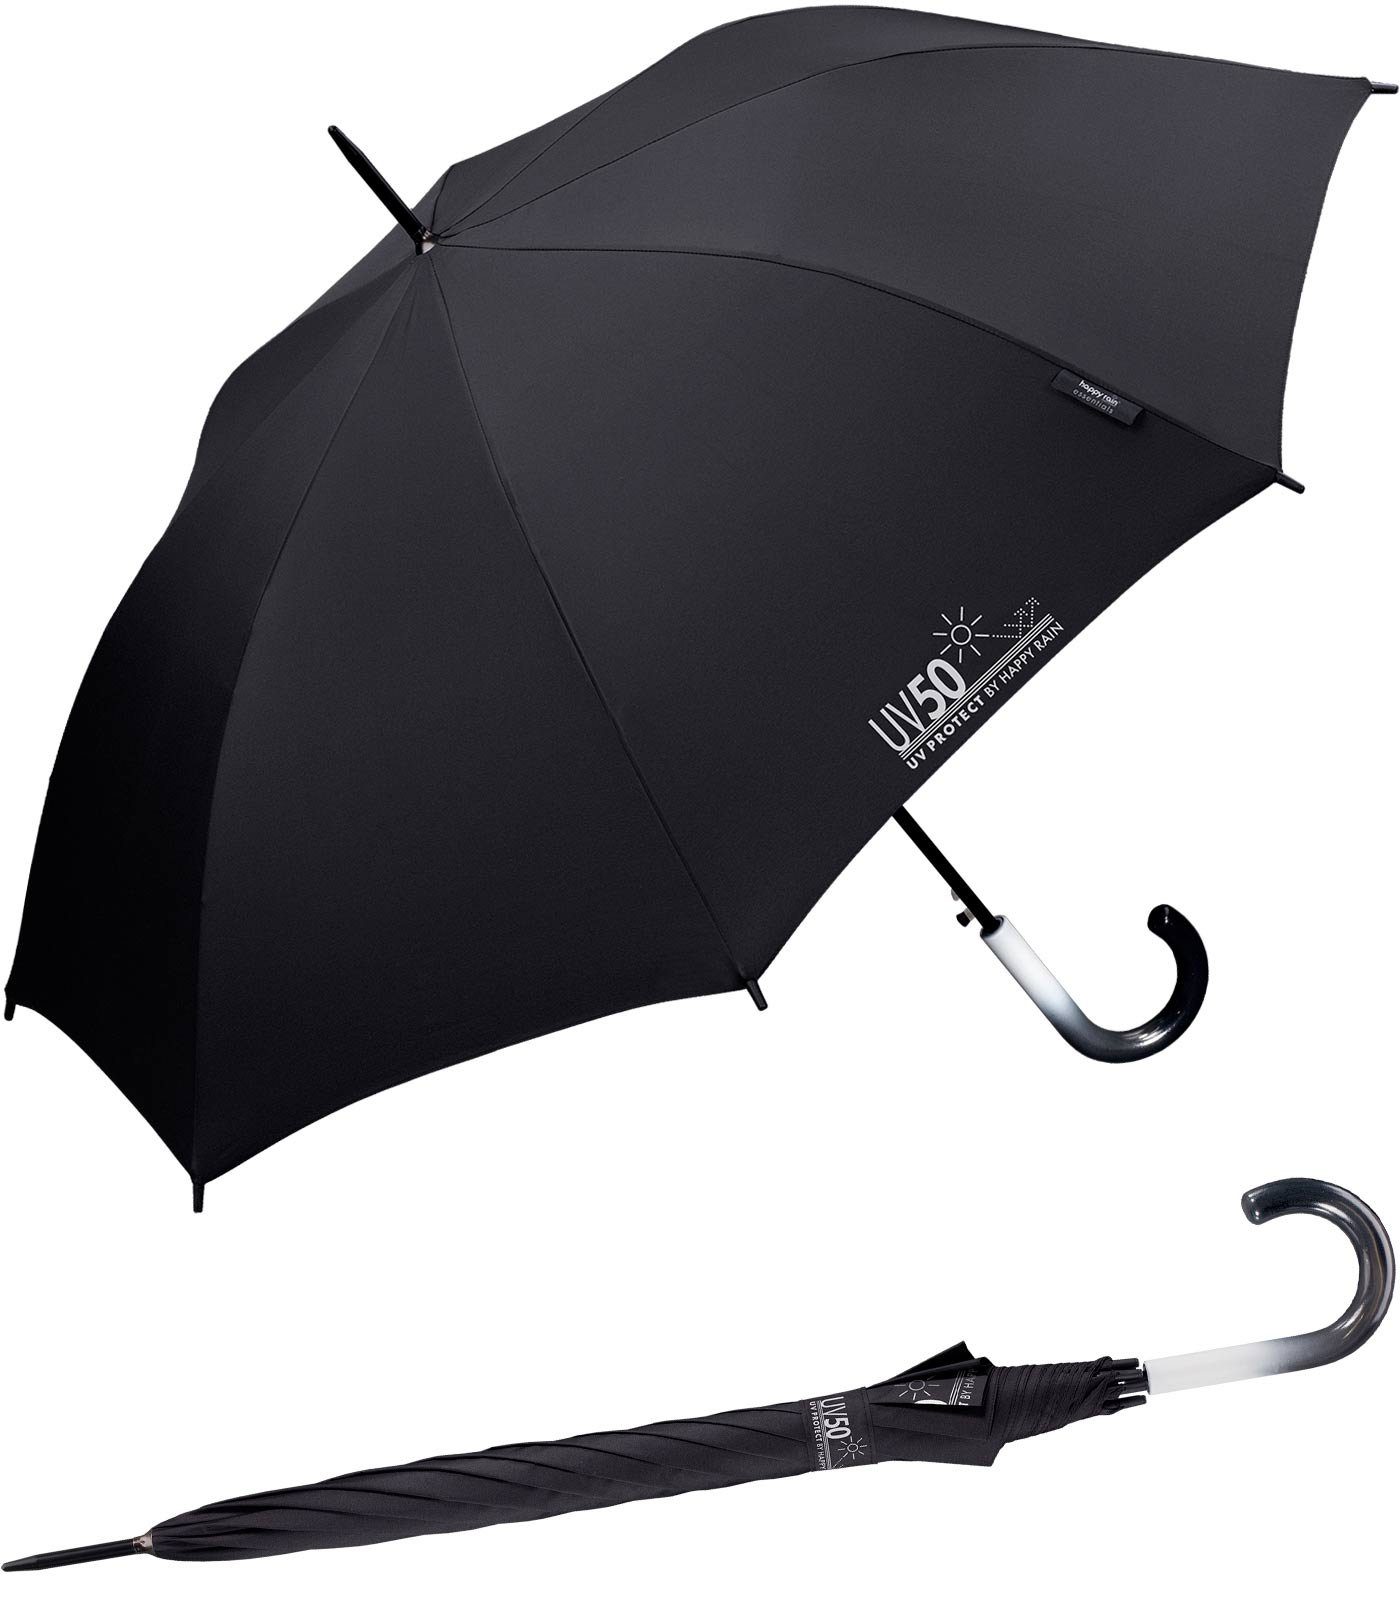 HAPPY RAIN Langregenschirm UV-Protect UV50 mit Automatik zweifarbiger Griff, schützt vor Sonne und Regen